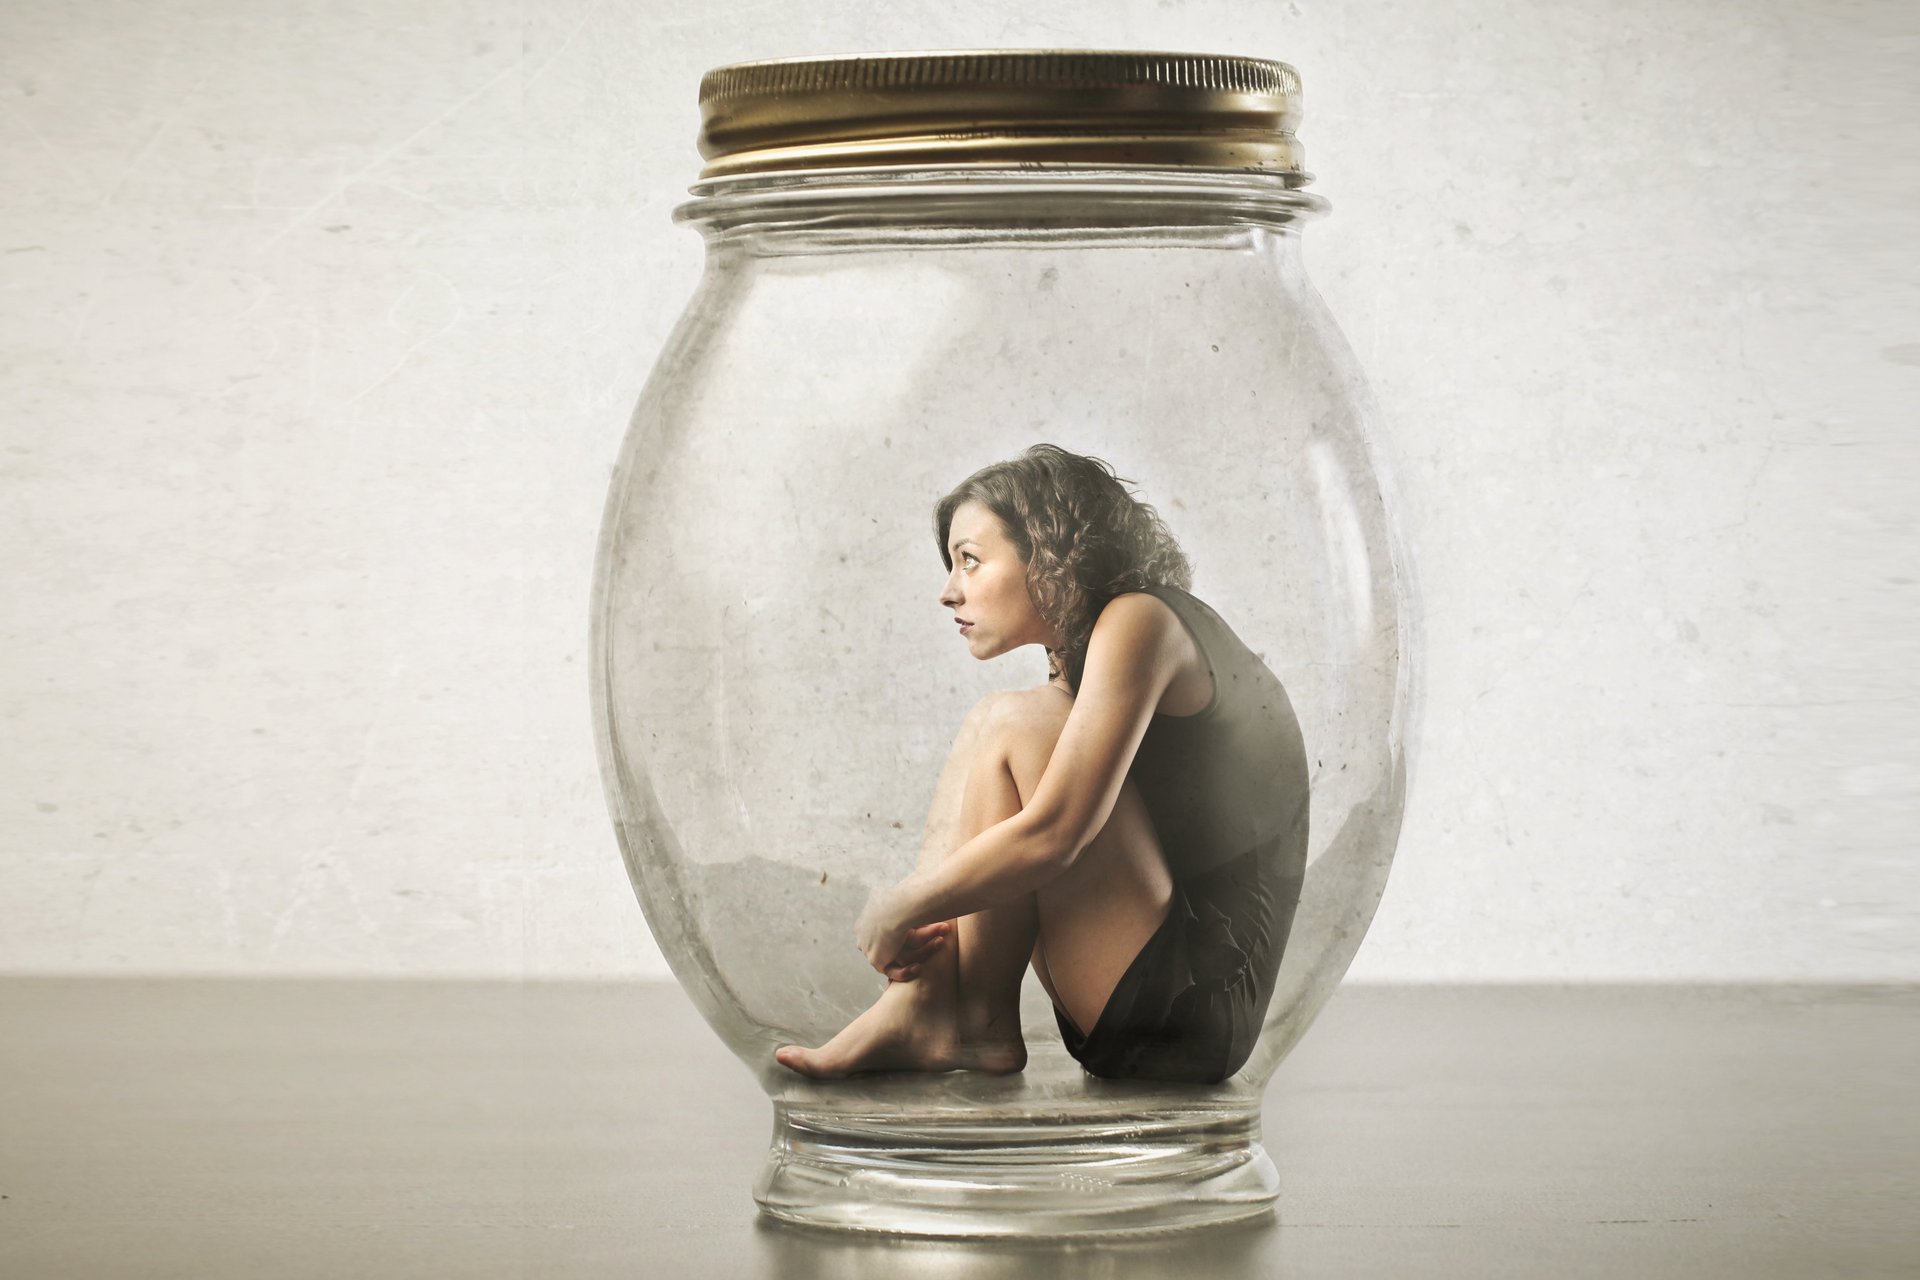 Eine Frau sitzt zusammengekauert auf dem Boden eines verschlossenes Einmachglases. 